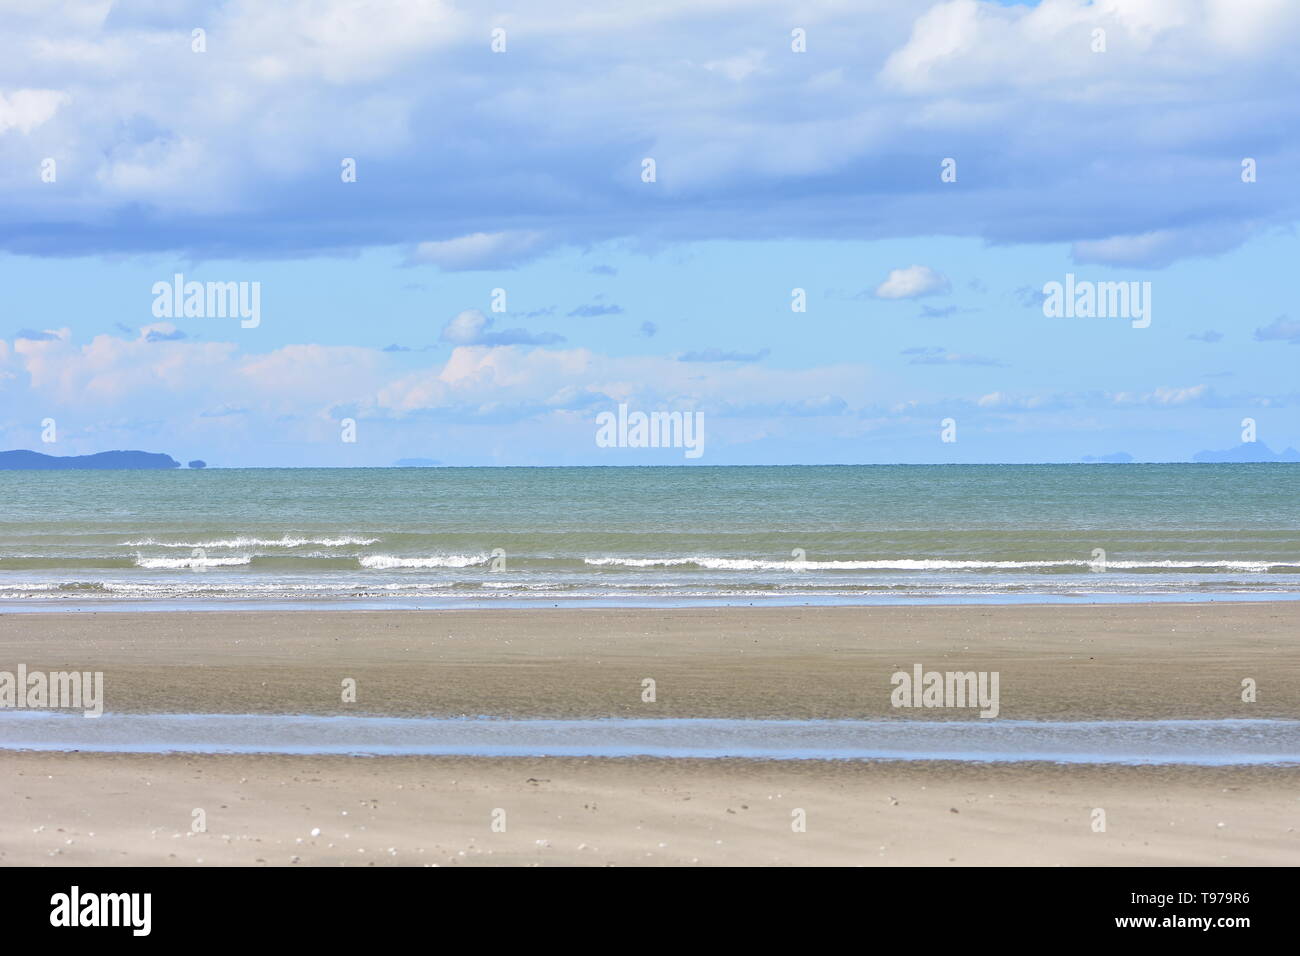 Vue de la plage de sable de couleur brun clair à marée basse avec vue sur la mer de couleur brun-vert, perturbé par les particules de sable en arrière-plan. Banque D'Images